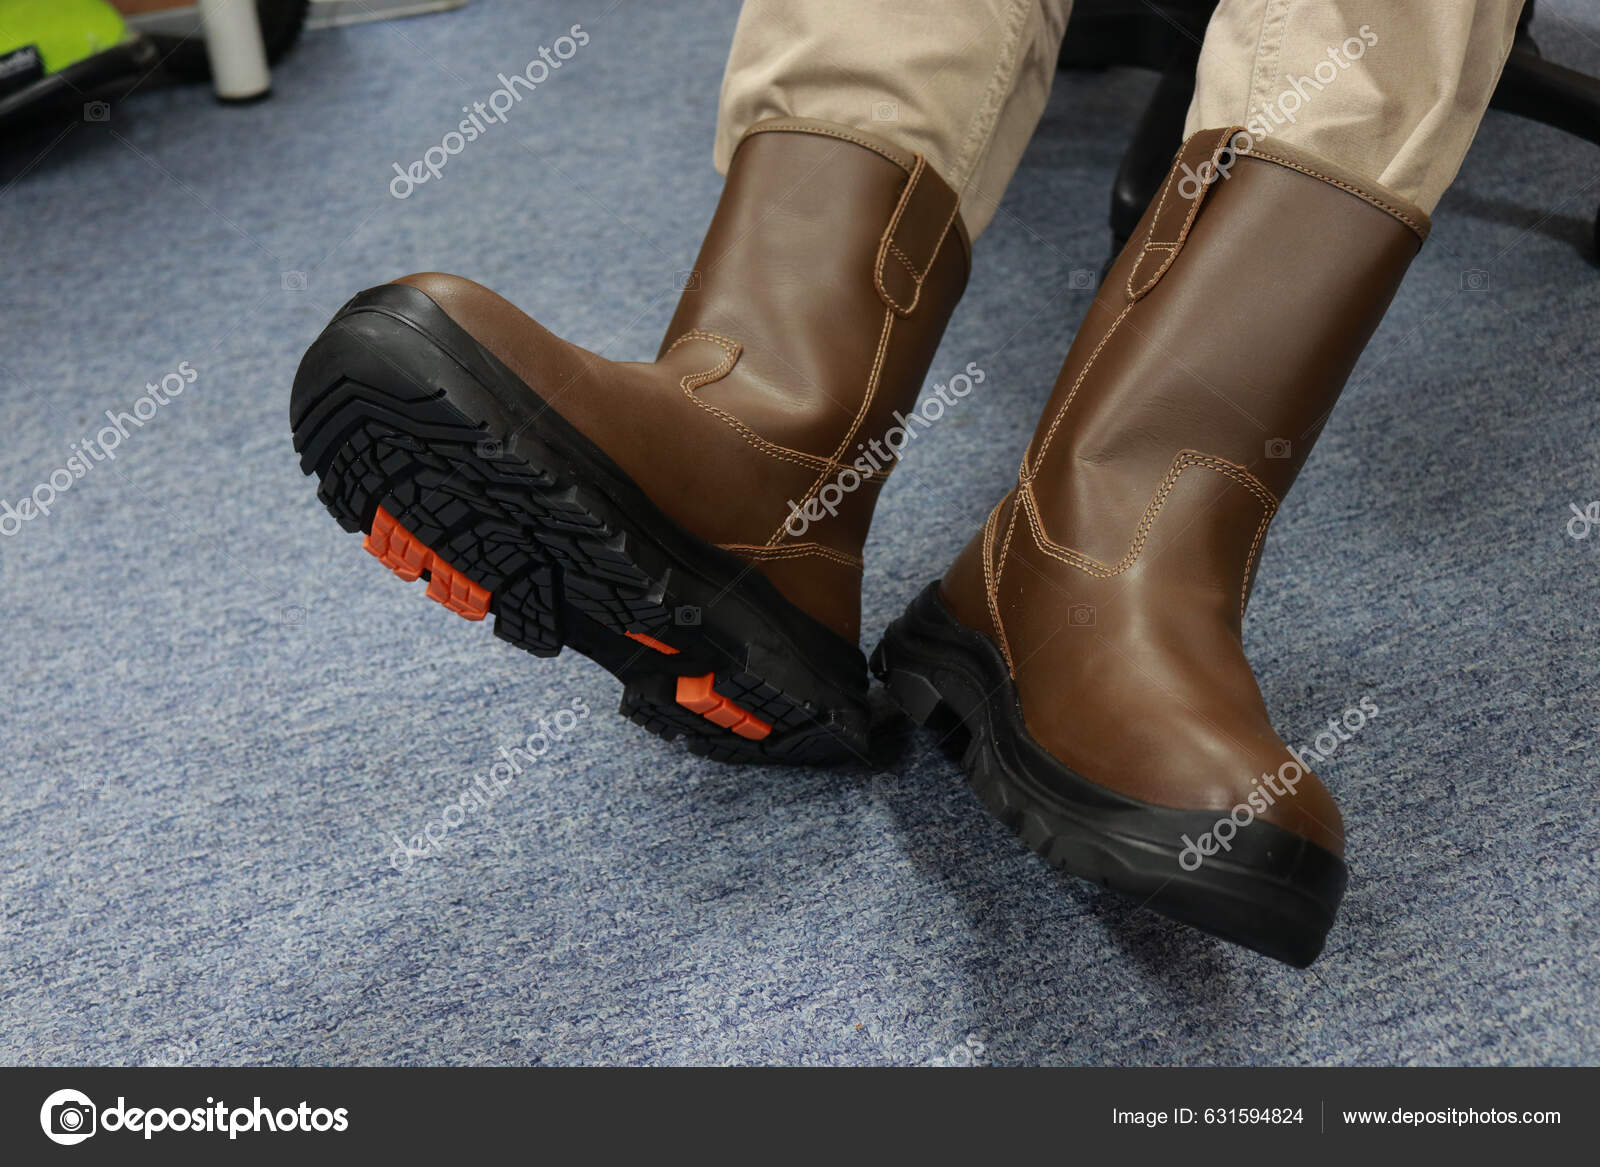 Bezpečnostní obuv stock fotografie, royalty free Bezpečnostní obuv obrázky  | Depositphotos